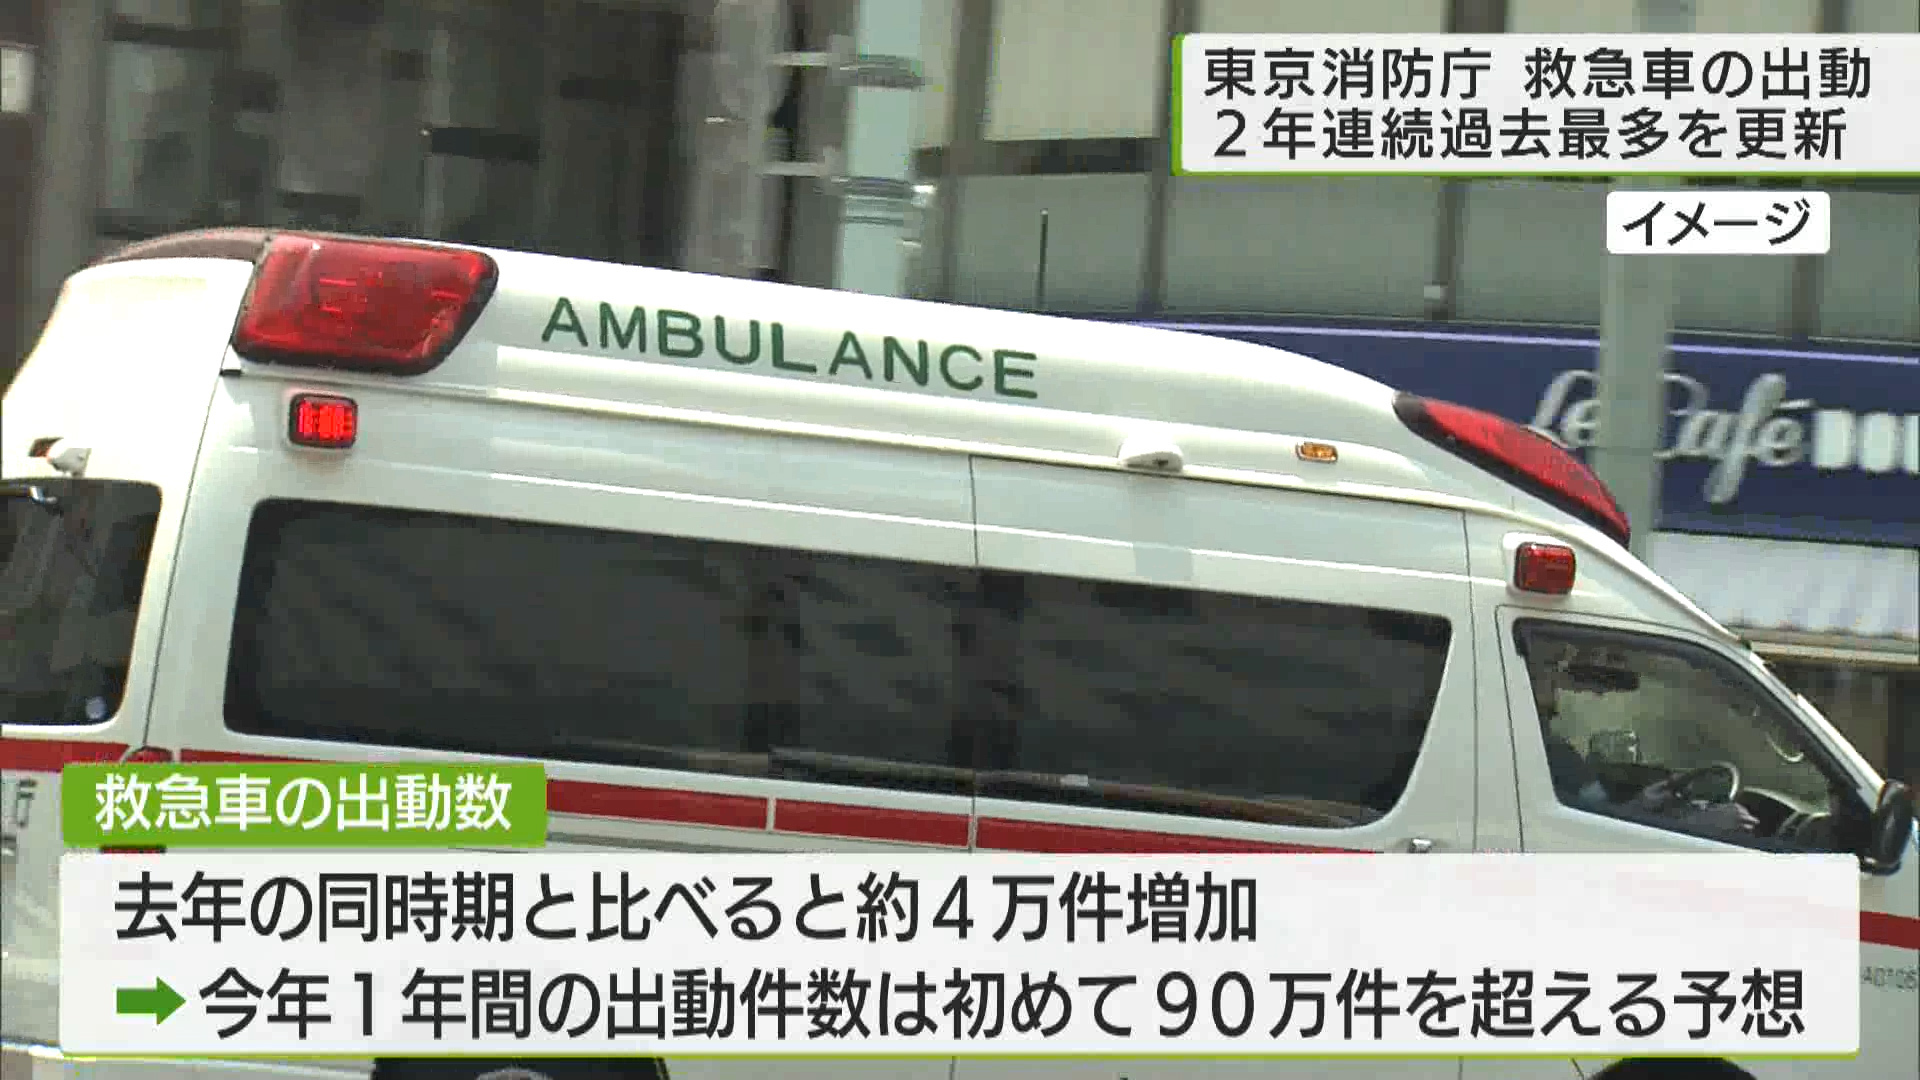 東京消防庁は今年都内の救急車の出動件数が、過去最多になったことを明らかにしました。その原因を新型コロナや、インフルエンザ流行の影響のほか、行動制限解除での交通事故による出動要請が増えたとし、不要不急な出動に対しての注意を呼びかけています。